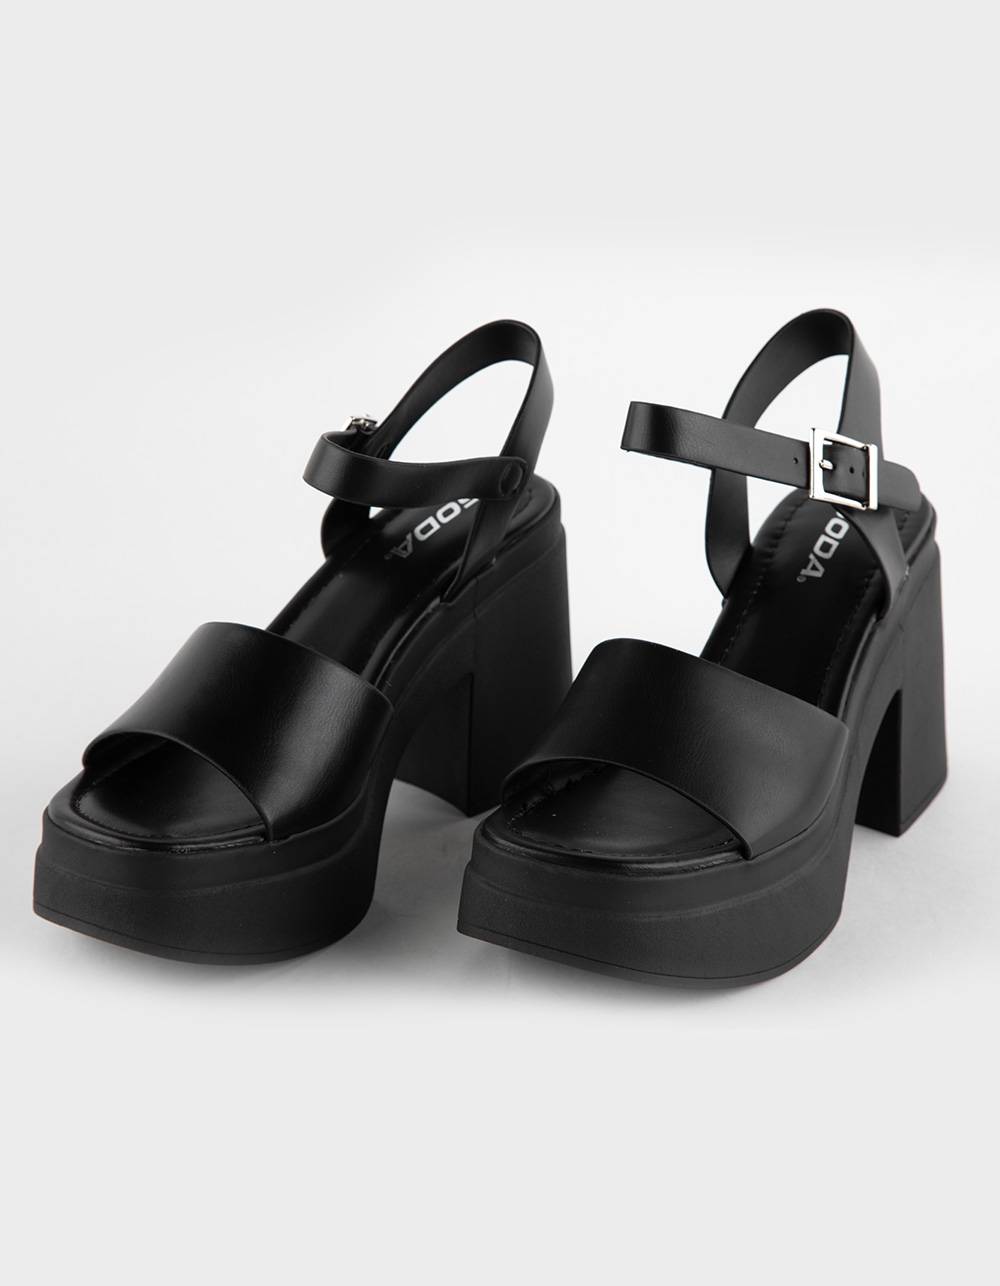 SODA Hattie Womens Platform Dress Sandals